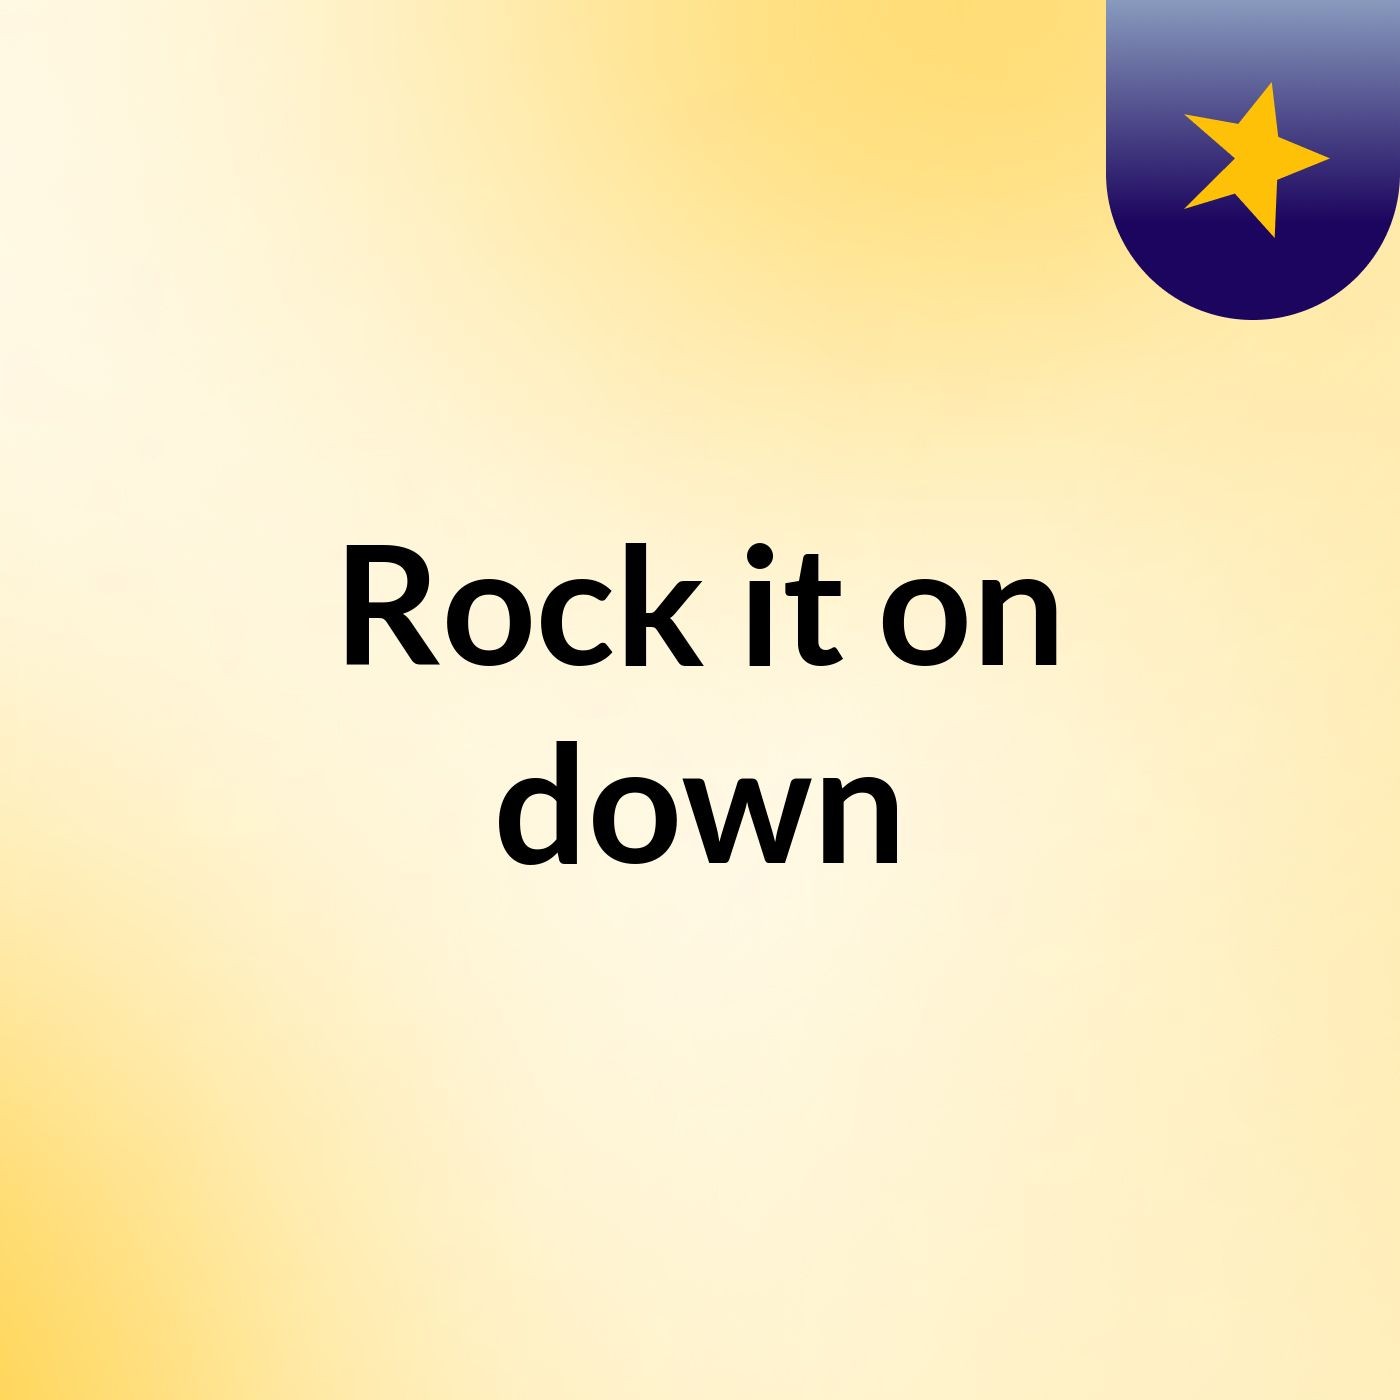 Rock it on down